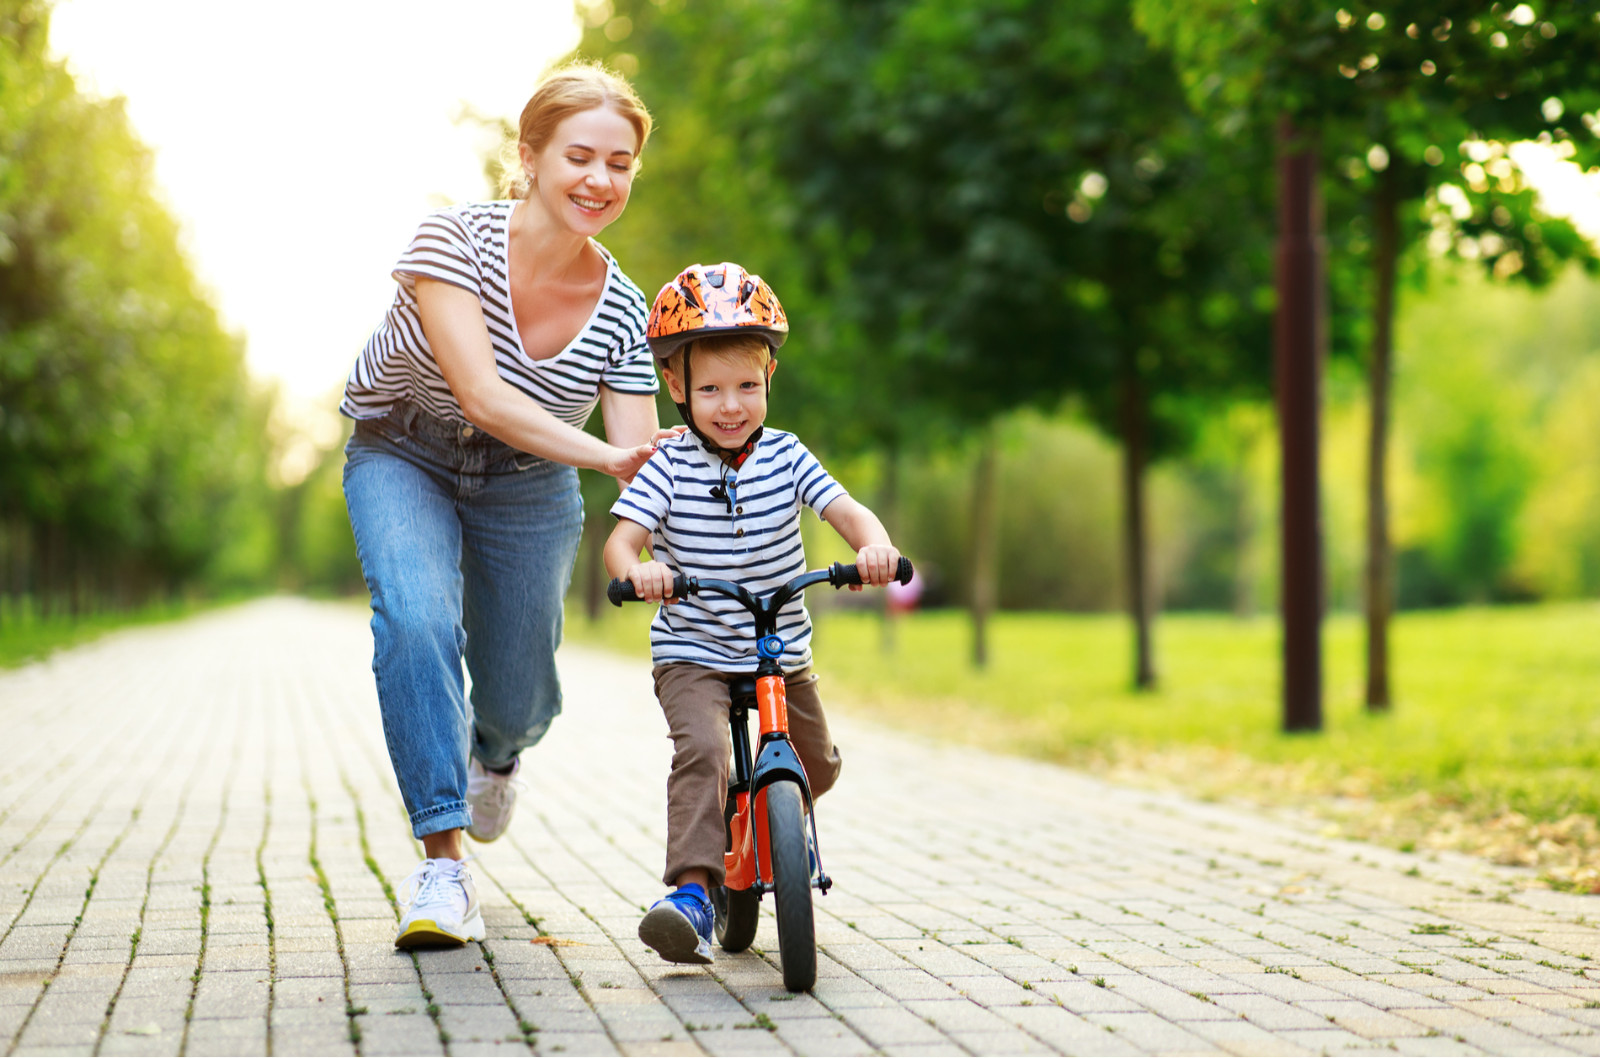 dziecko-jedzie-na-rowerku-dzieciecy-biegowym-w-parku-w-asyscie-swojej-mamy-1